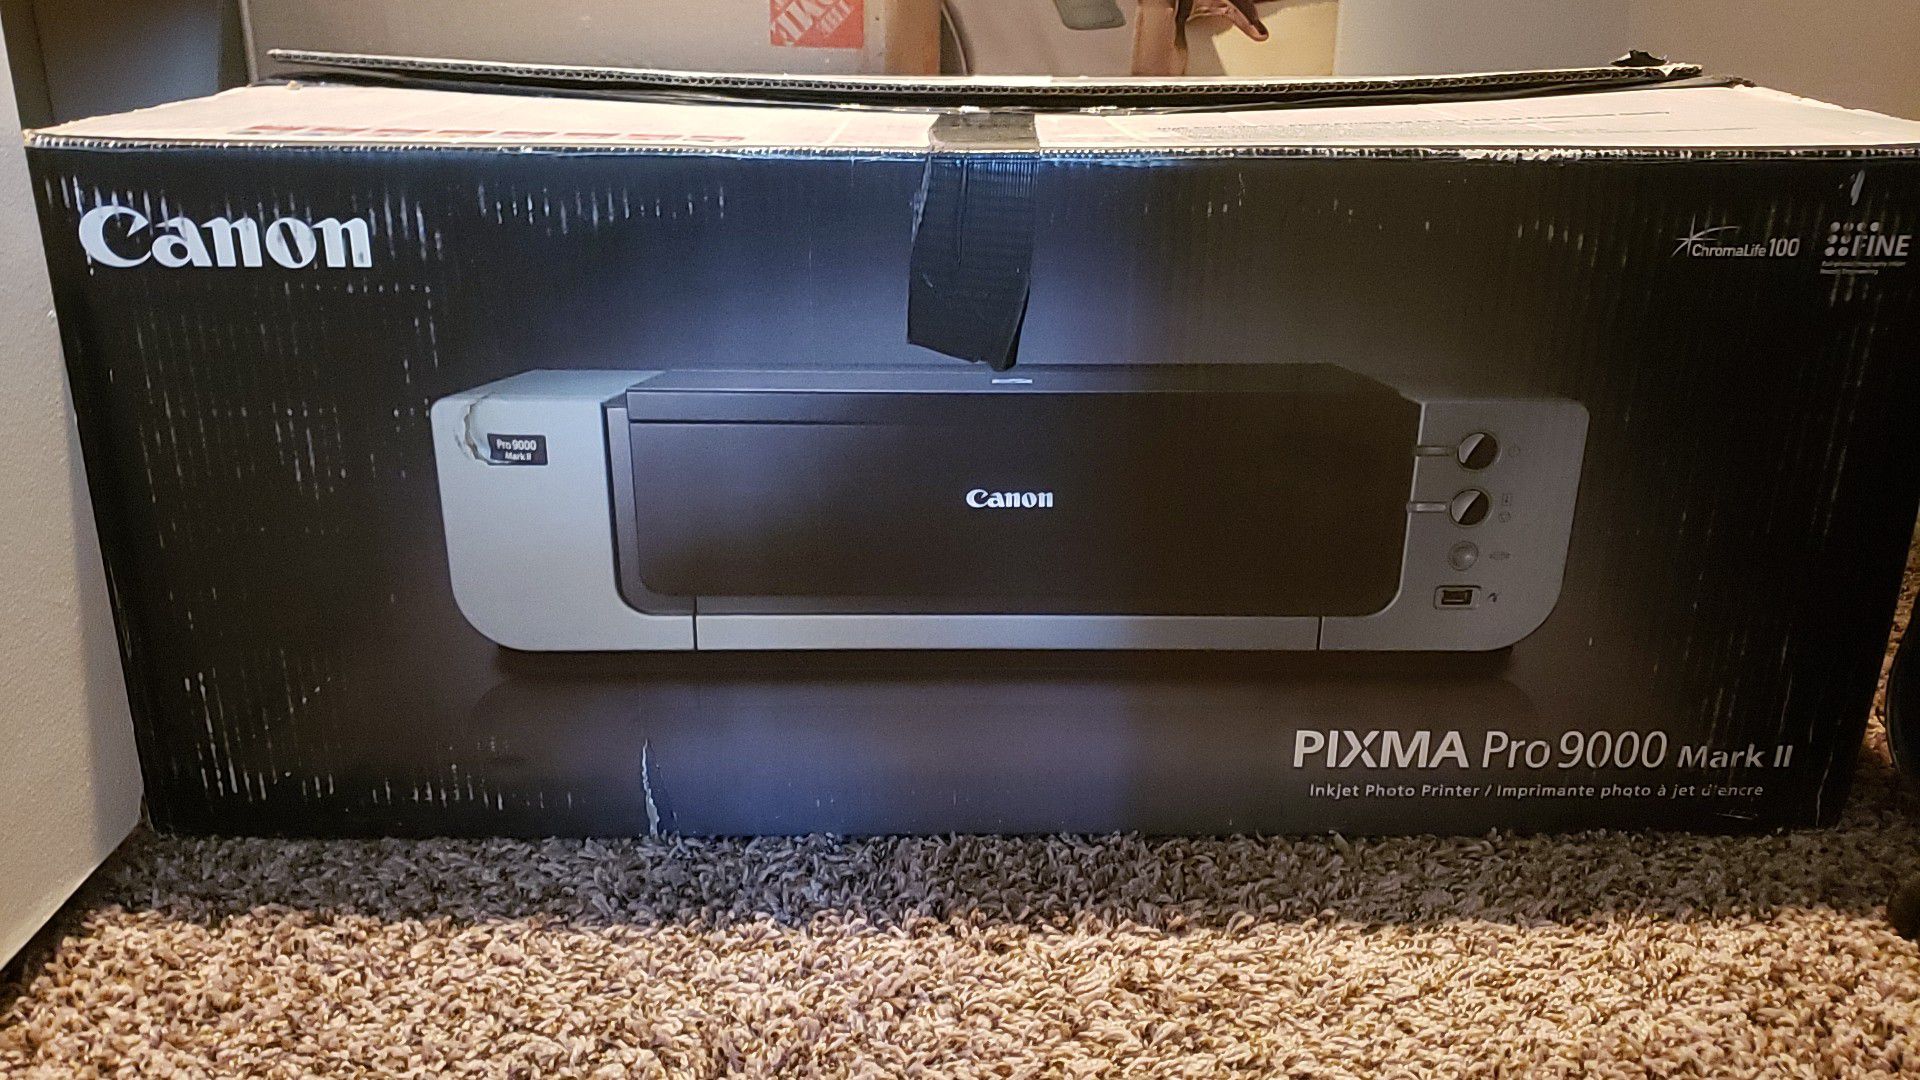 Canon PIXMA printer with Photo paper